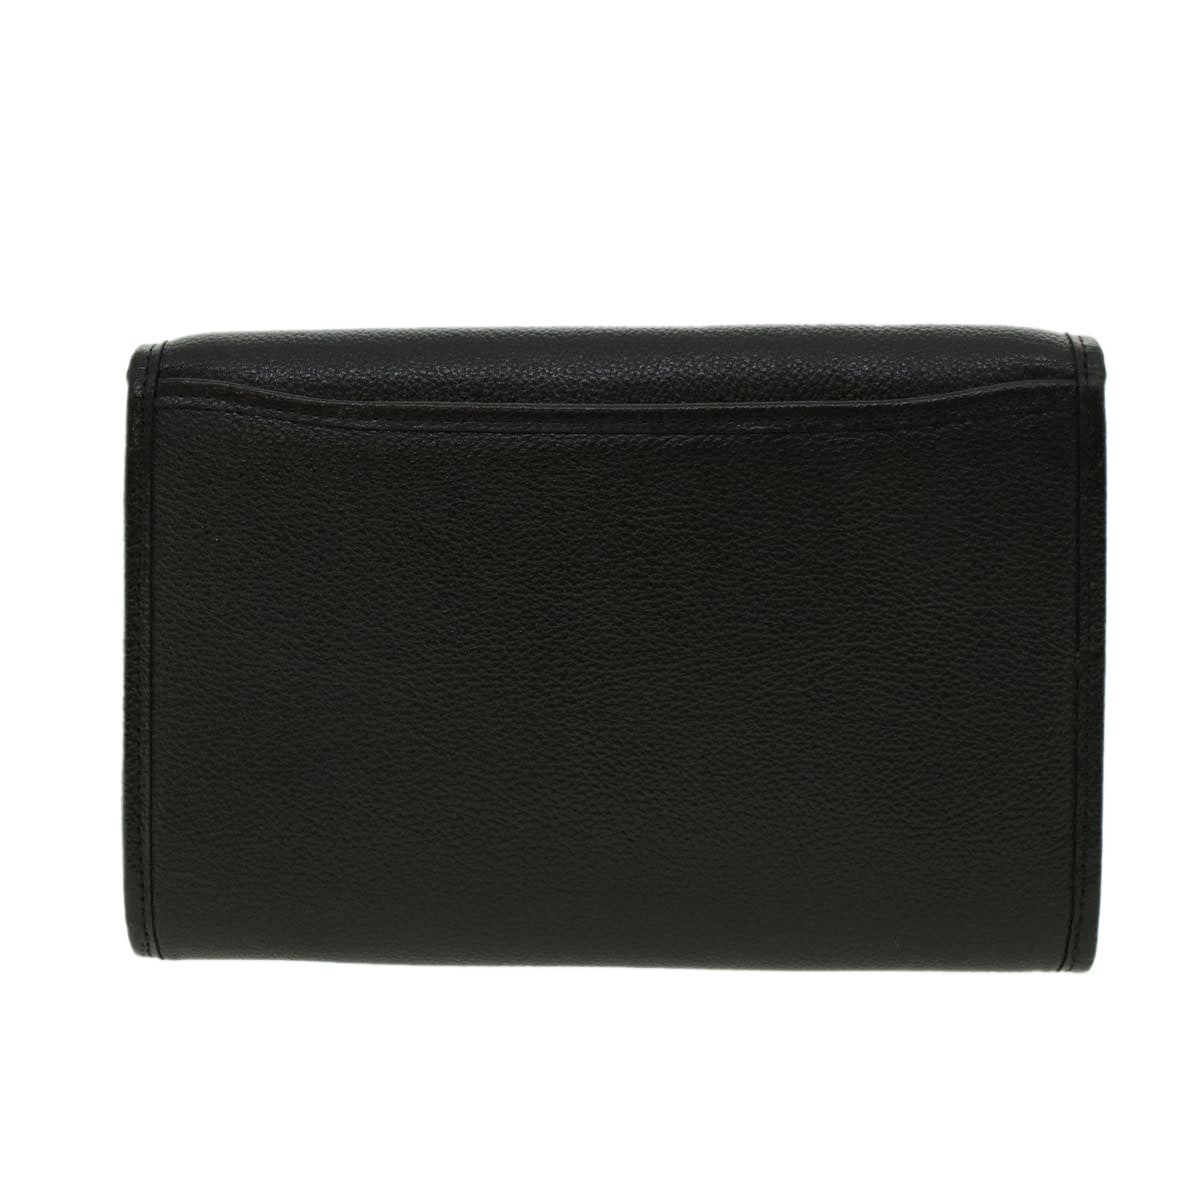 SAINT LAURENT Clutch Bag Leather Black Auth am4302 - 0